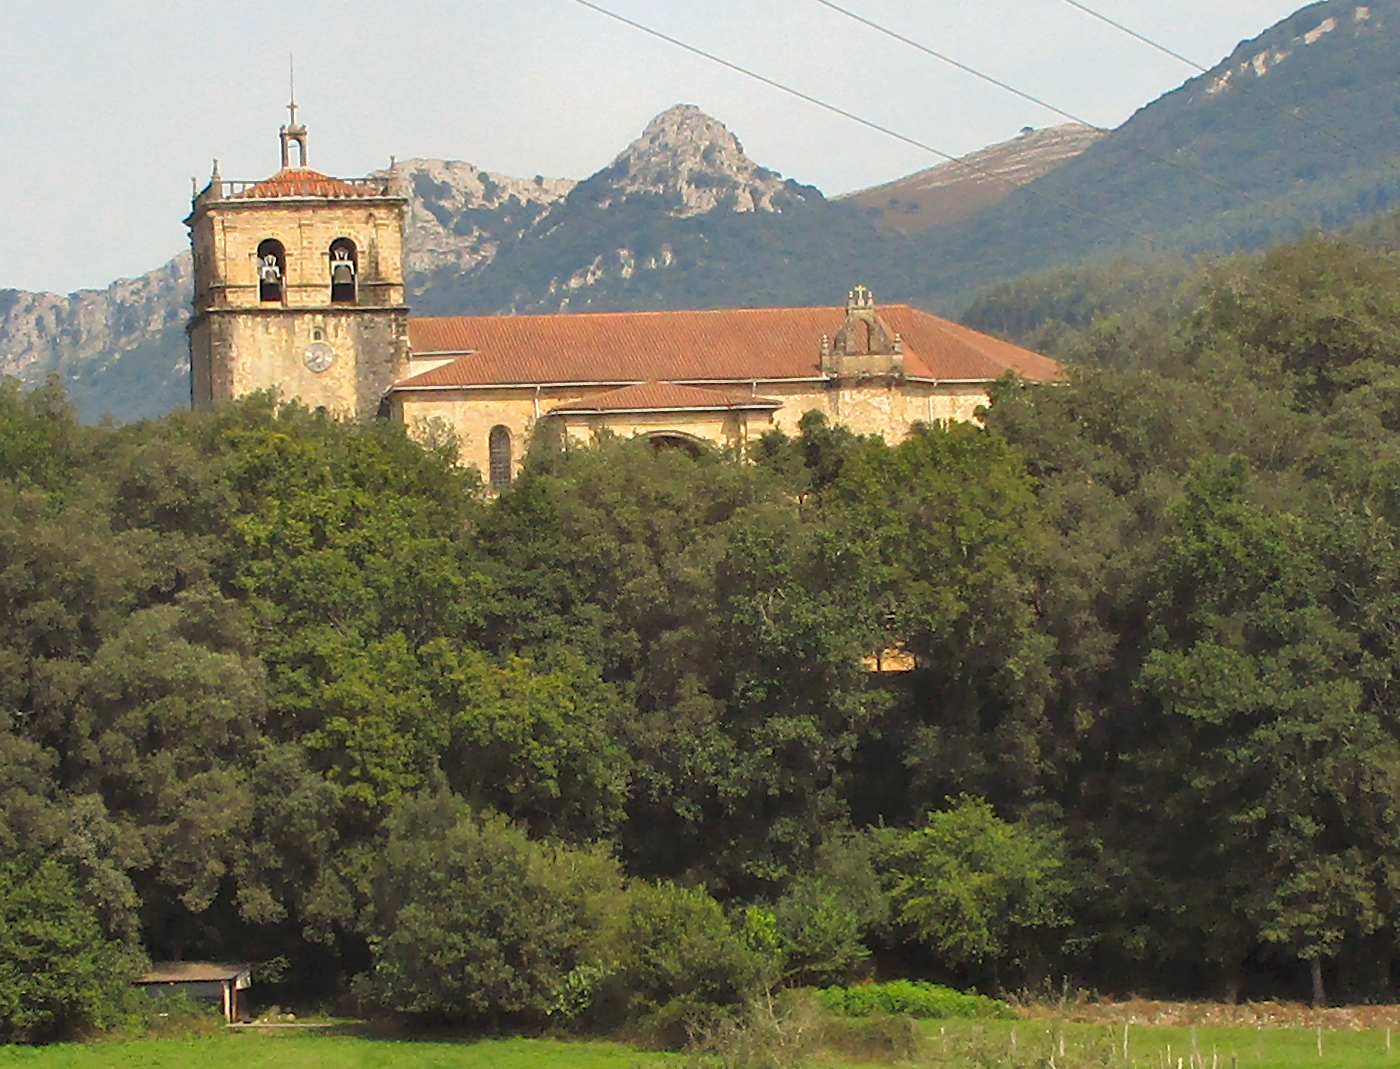 El Puente Monastery on a hill